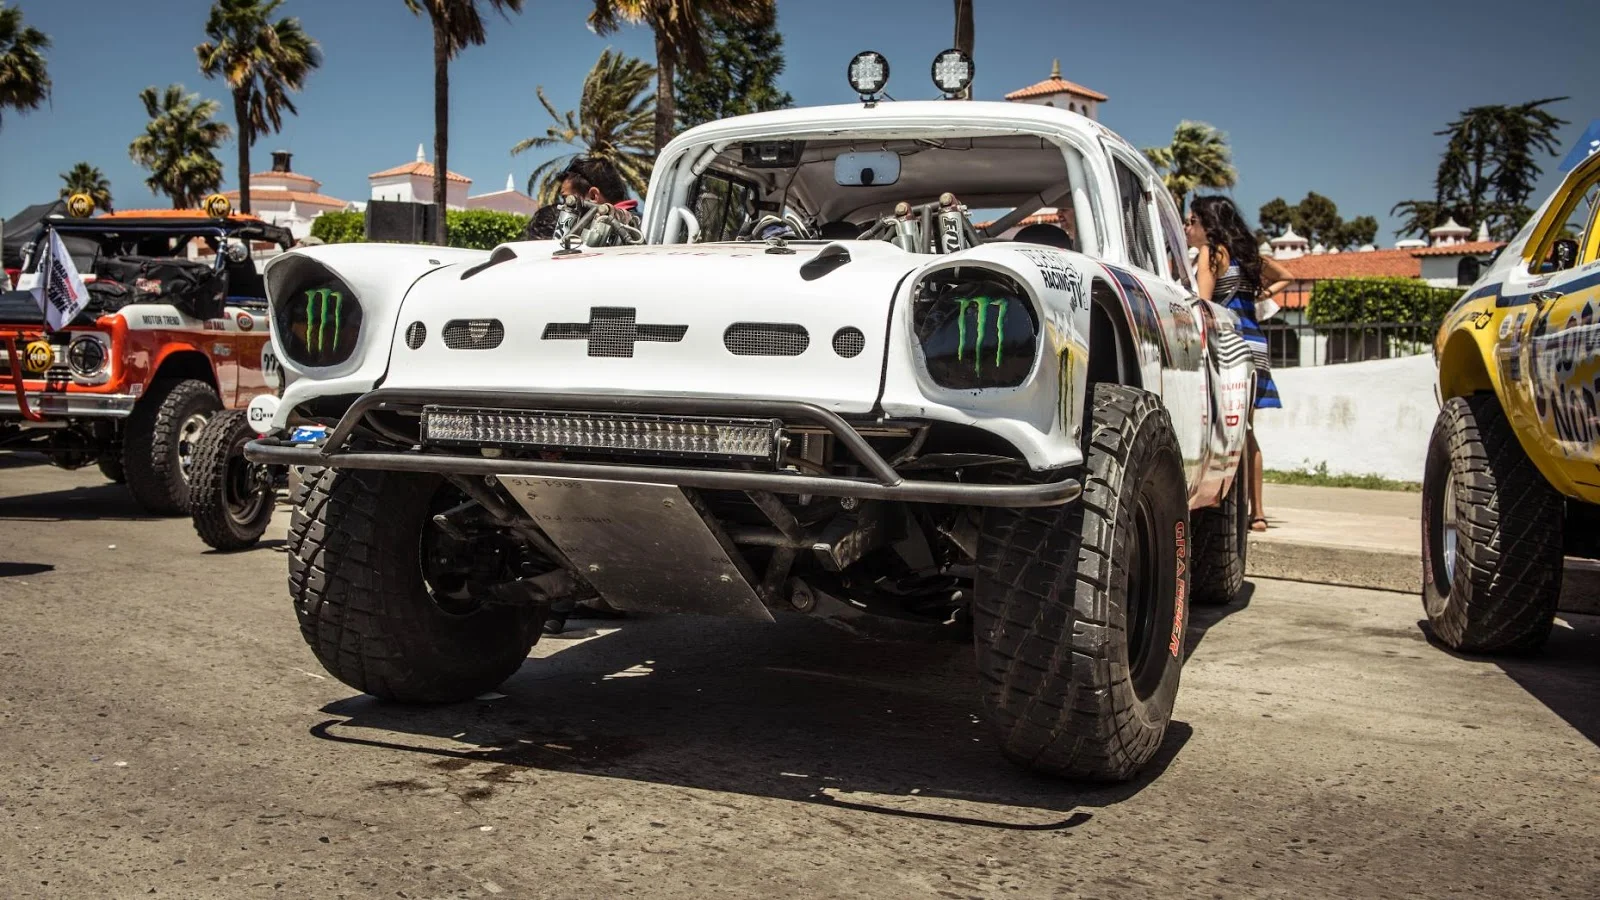 TOP siêu xe điên rồ & kỳ quái nhất xuất hiện tại Mexico 1000